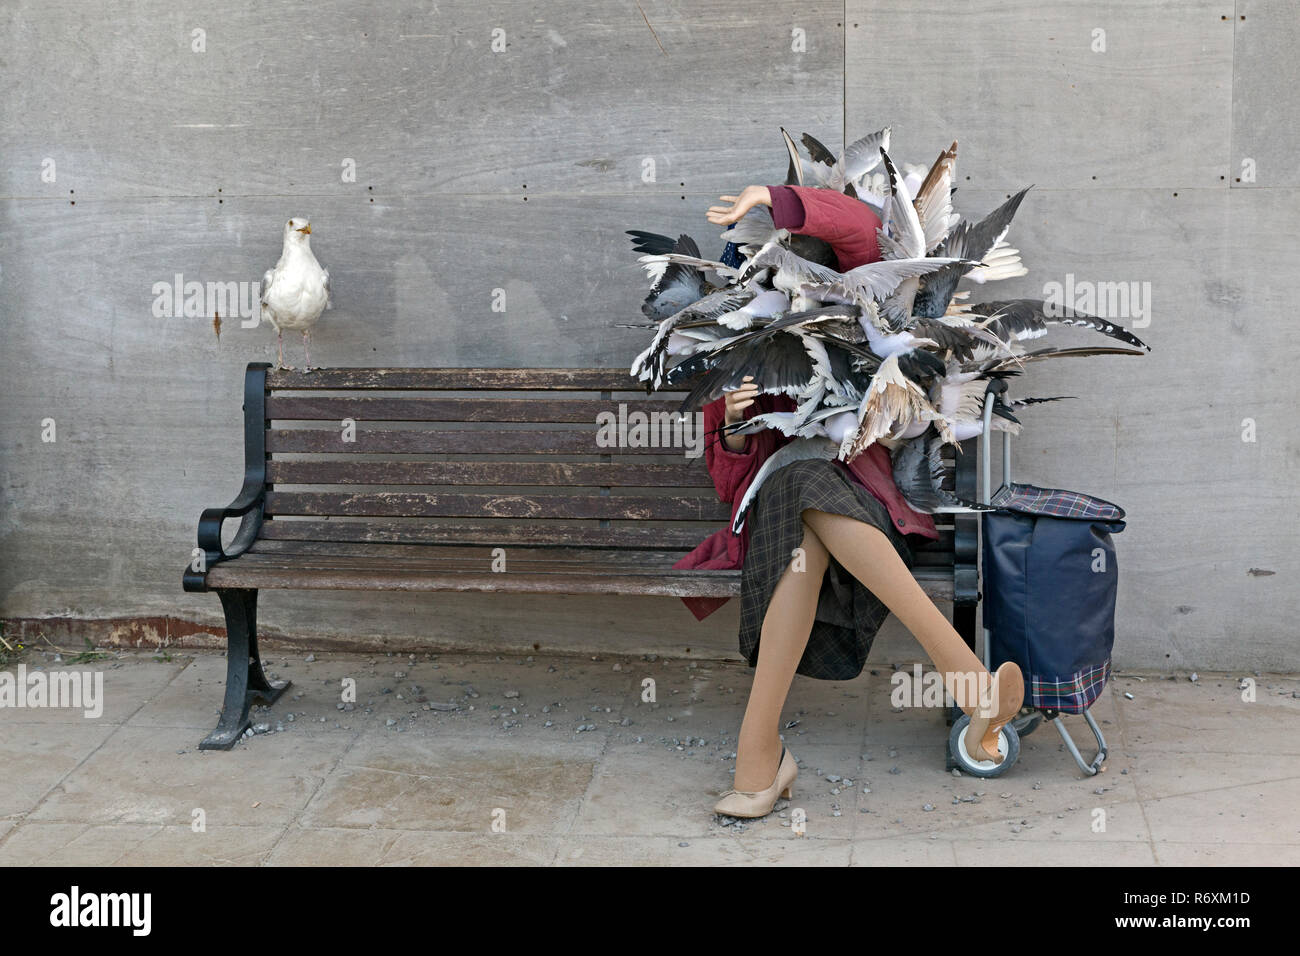 Eine Skulptur von Vögel Angriff auf eine Frau in einer Szene erinnert an Hitchcocks Film "Die Vögel" bei Banksys Ausstellung Dismaland, 10. September 2015. Stockfoto